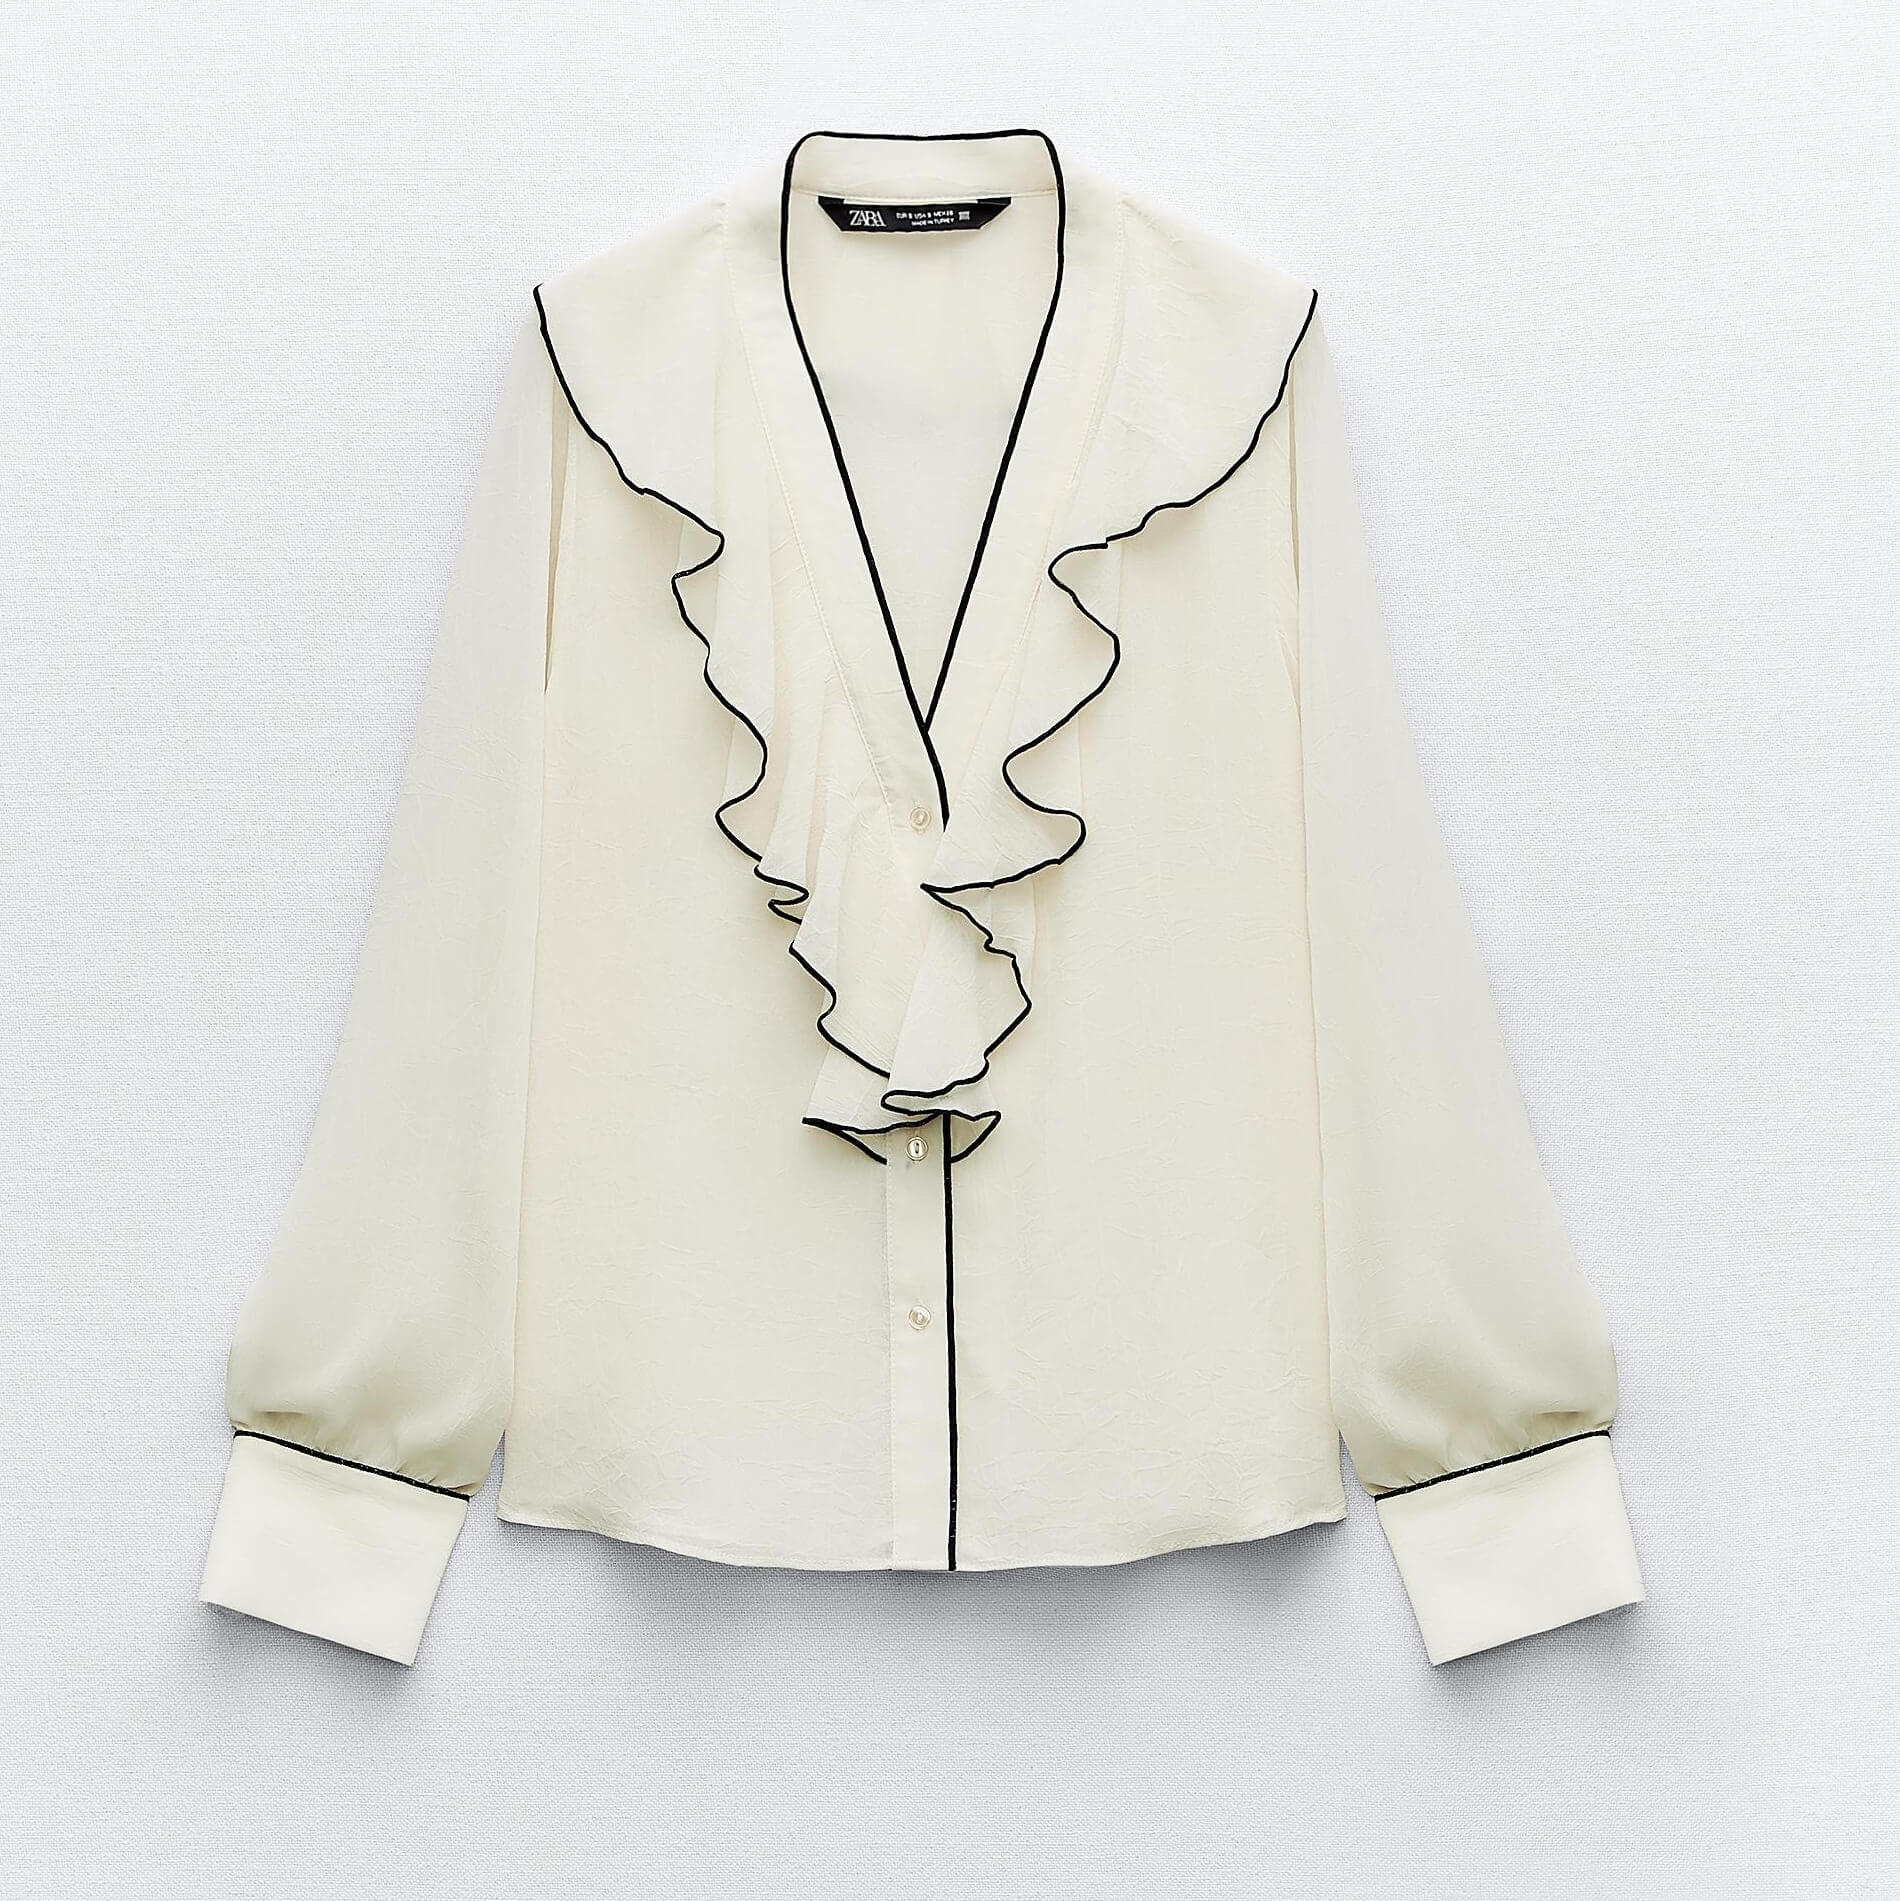 Блузка ZaraRuffled With Contrast Piping, светло-бежевый блузка женская с цветочным принтом v образным вырезом и длинным рукавом